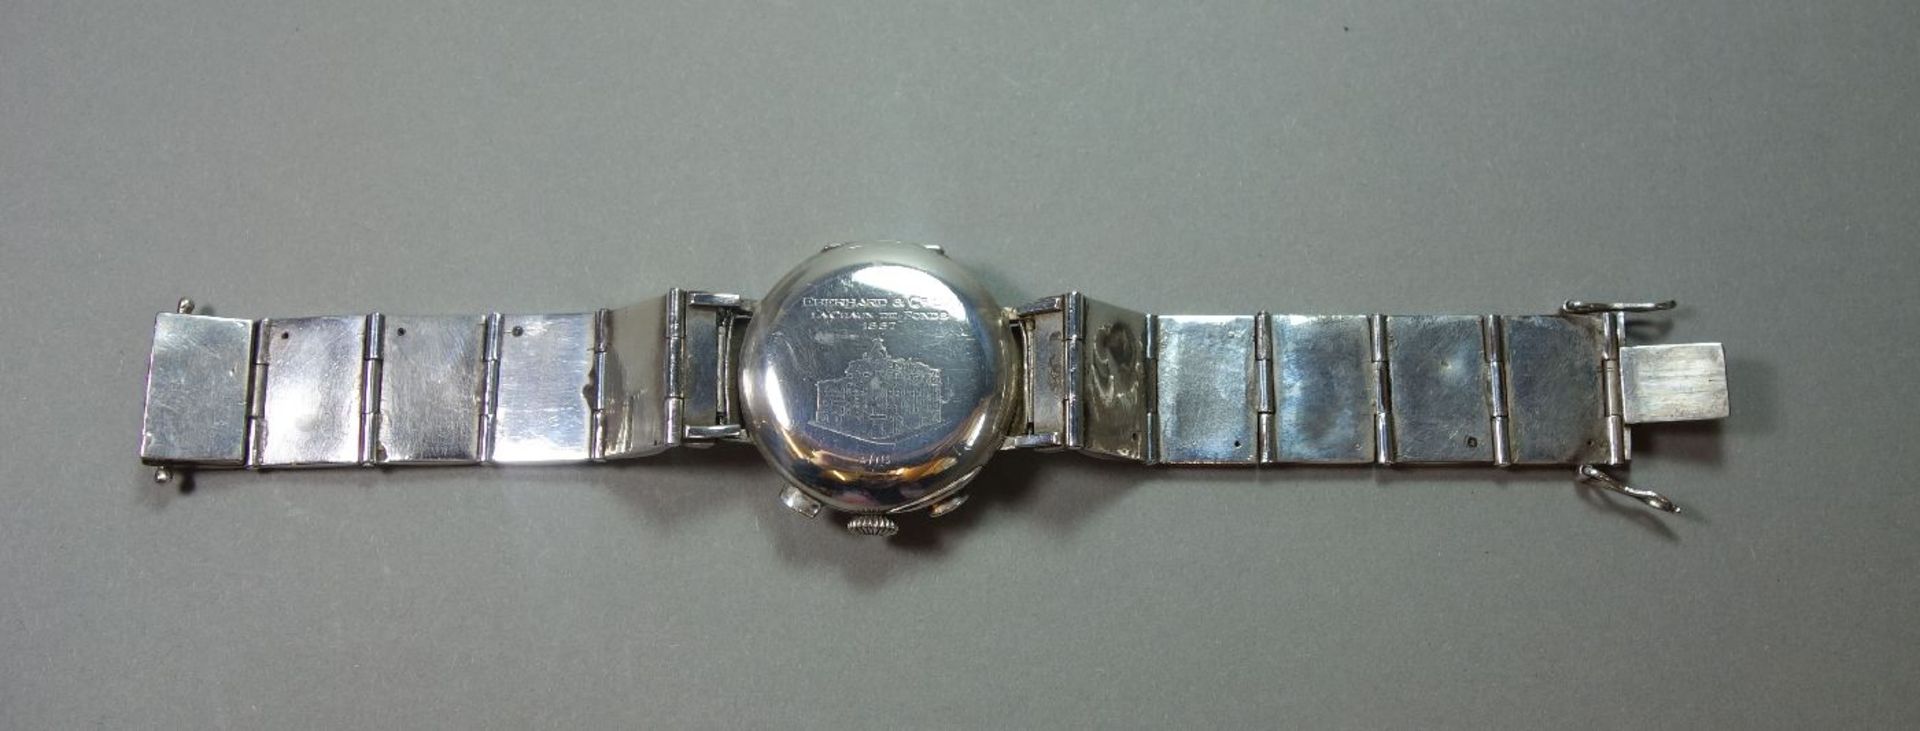 EBERHARD & Co. CHRONOGRAPH / ARMBANDUHR, wristwatch; Schweiz. Gehäuse und Armband aus Silber ( - Bild 5 aus 7